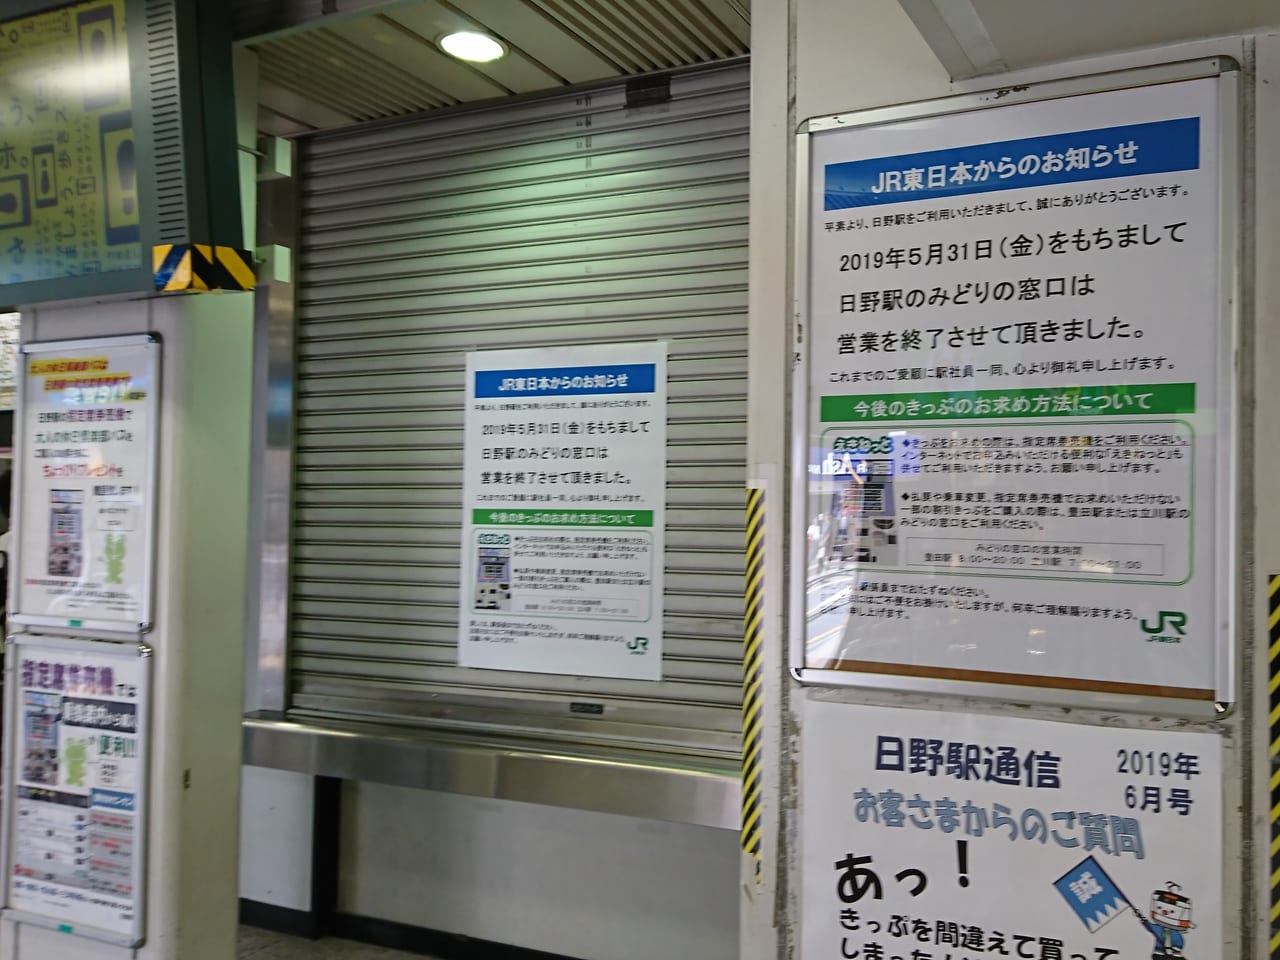 日野駅みどりの窓口は2019年5月31日に営業を終了